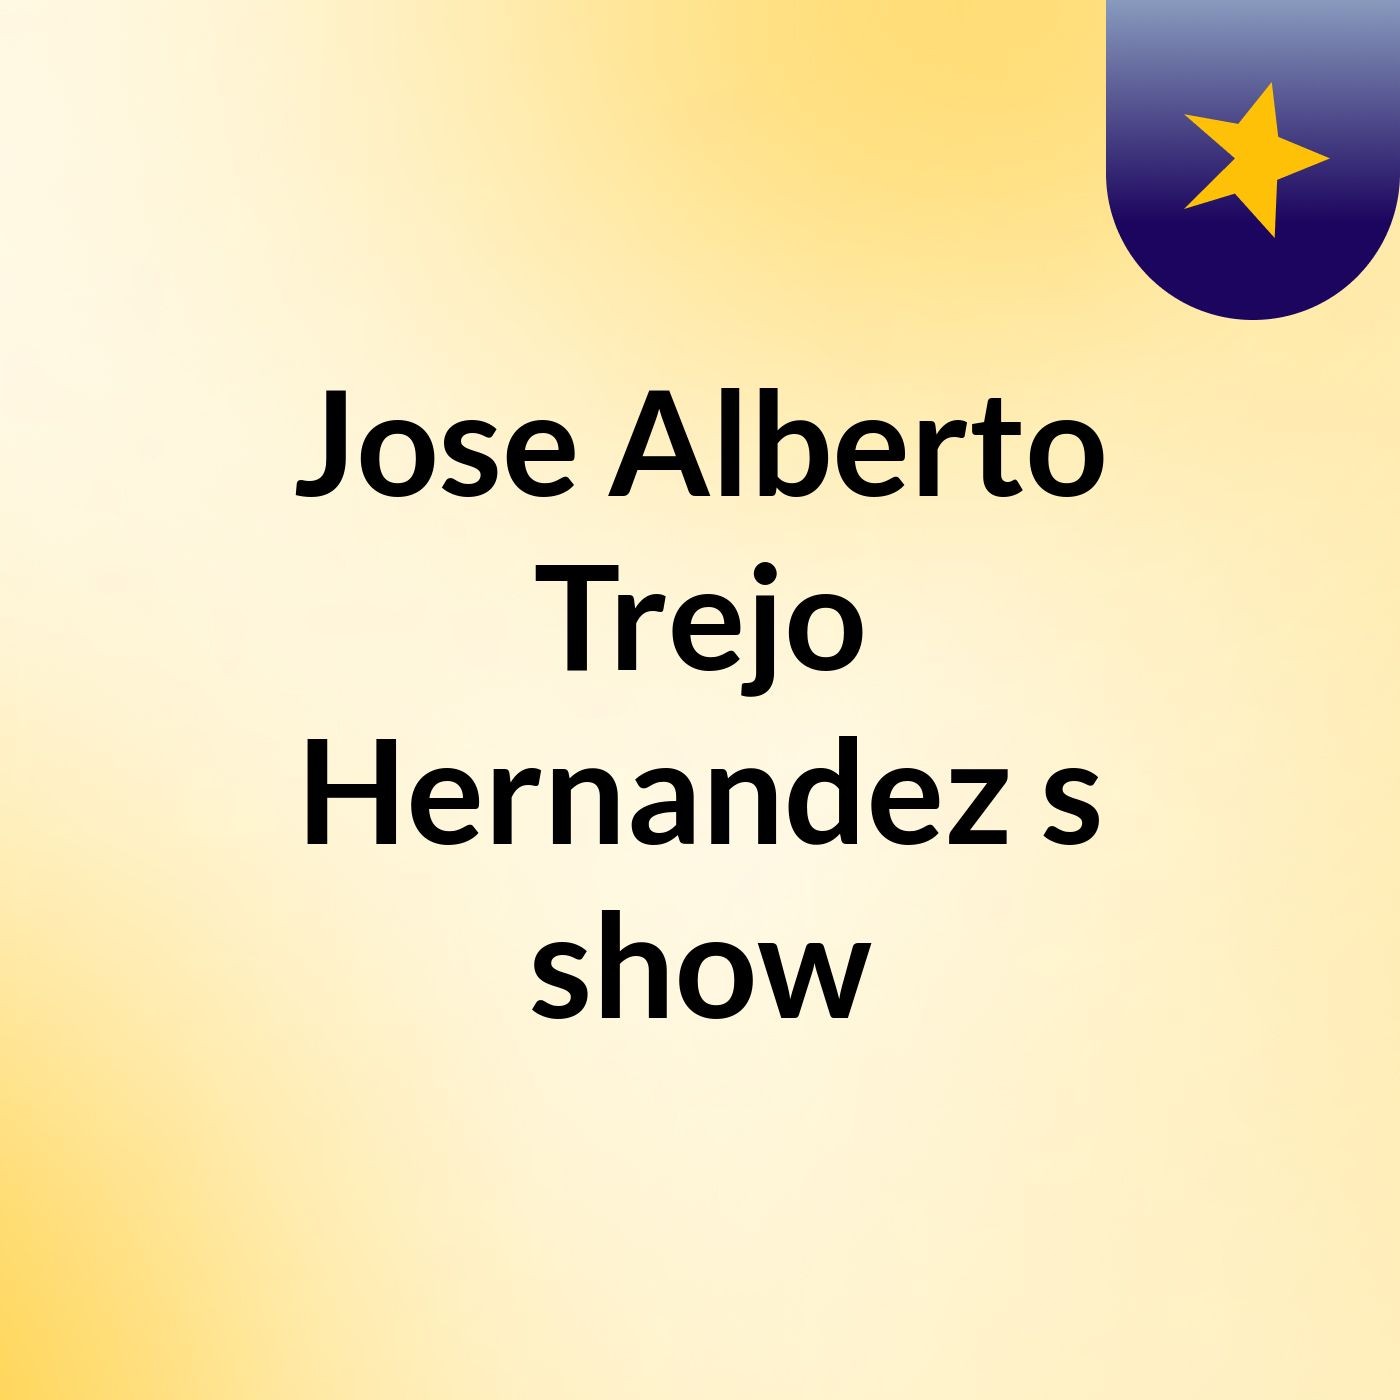 Jose Alberto Trejo Hernandez's show